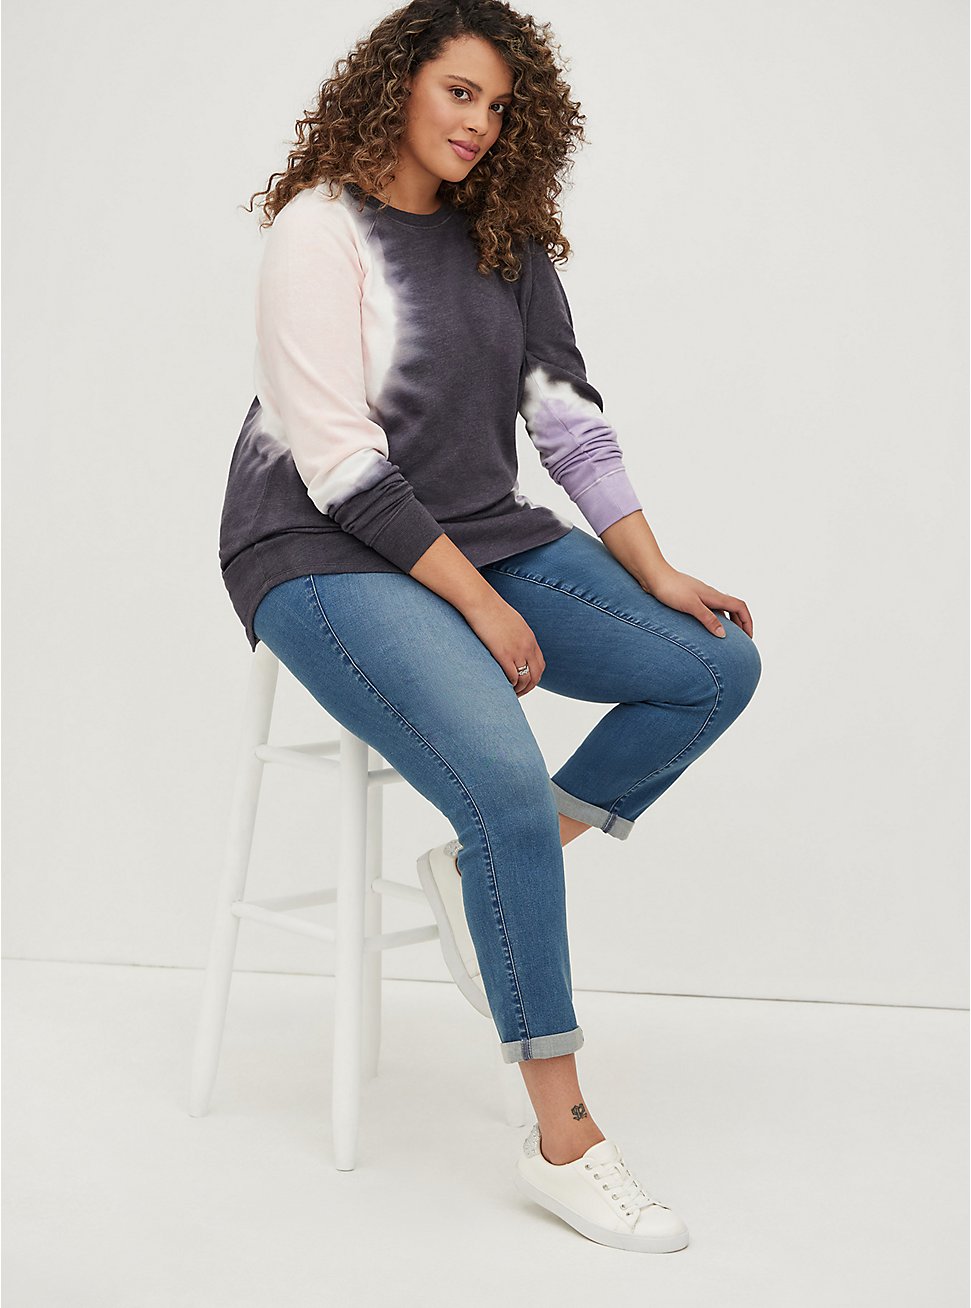 Tunic Sweatshirt - Cozy Fleece Tie-Dye Pink & Black, OTHER PRINTS, hi-res